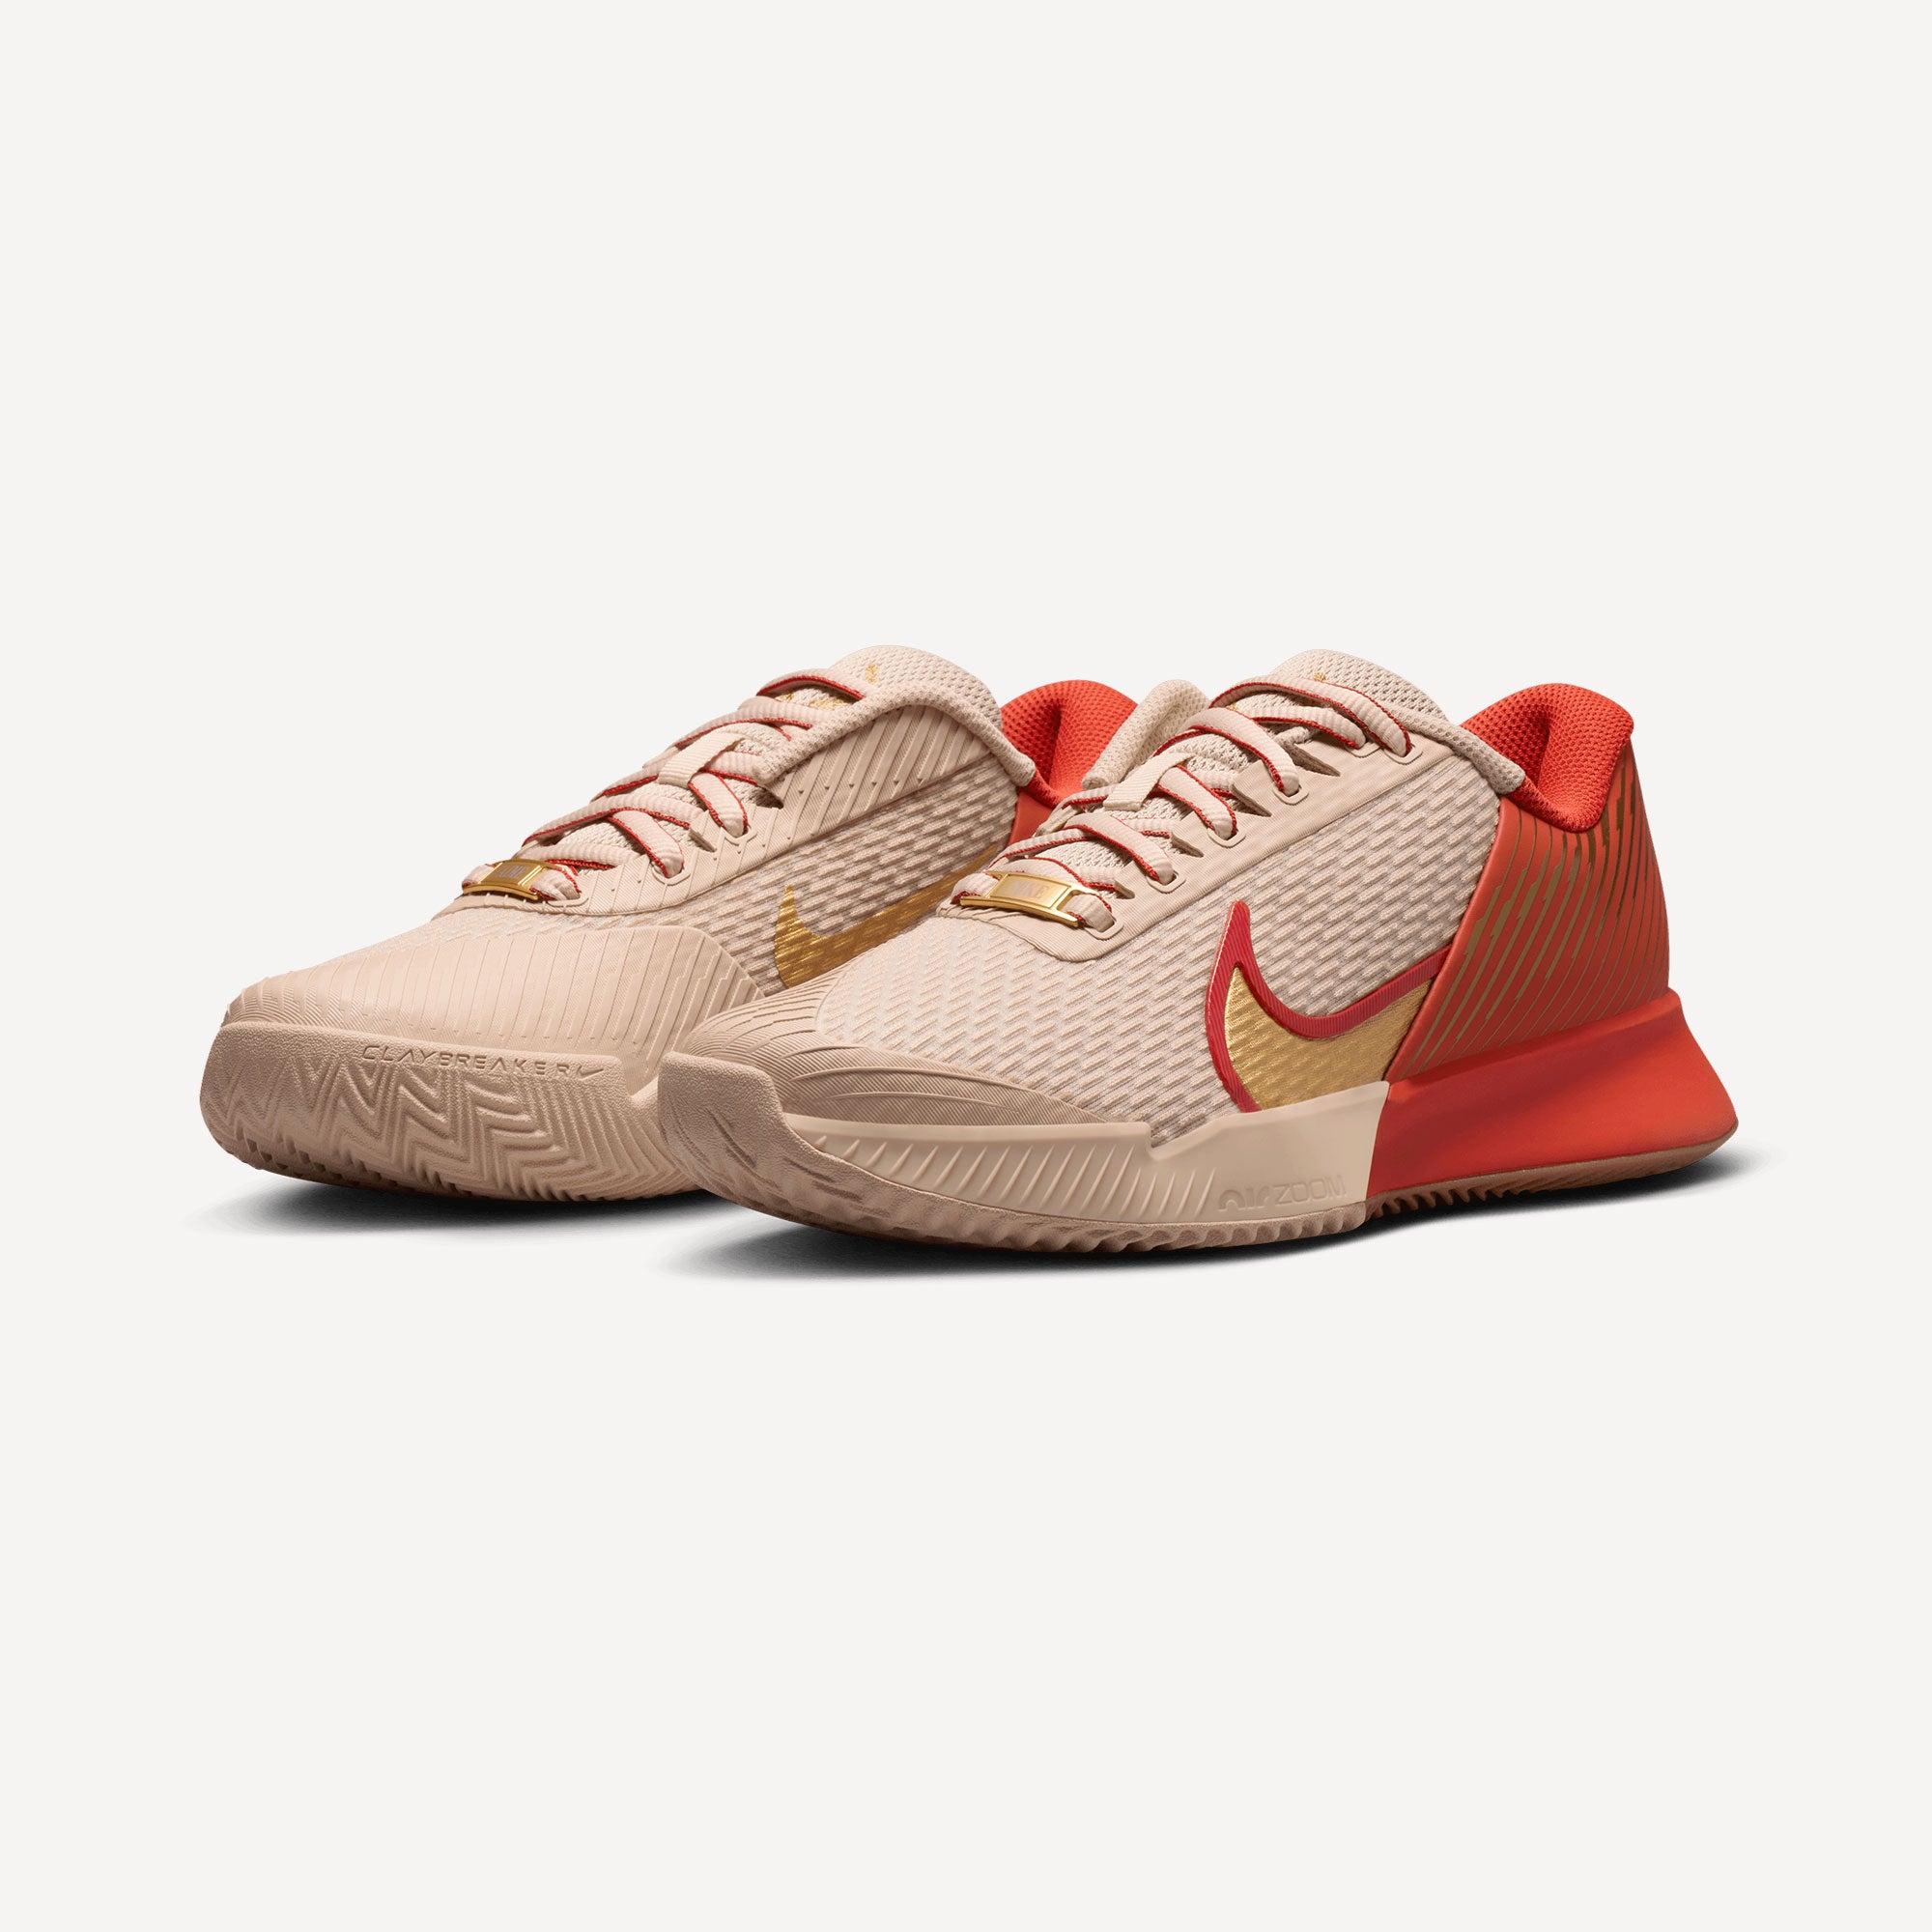 NikeCourt Air Zoom Vapor Pro 2 Premium Women's Clay Court Tennis Shoes - Sand (4)